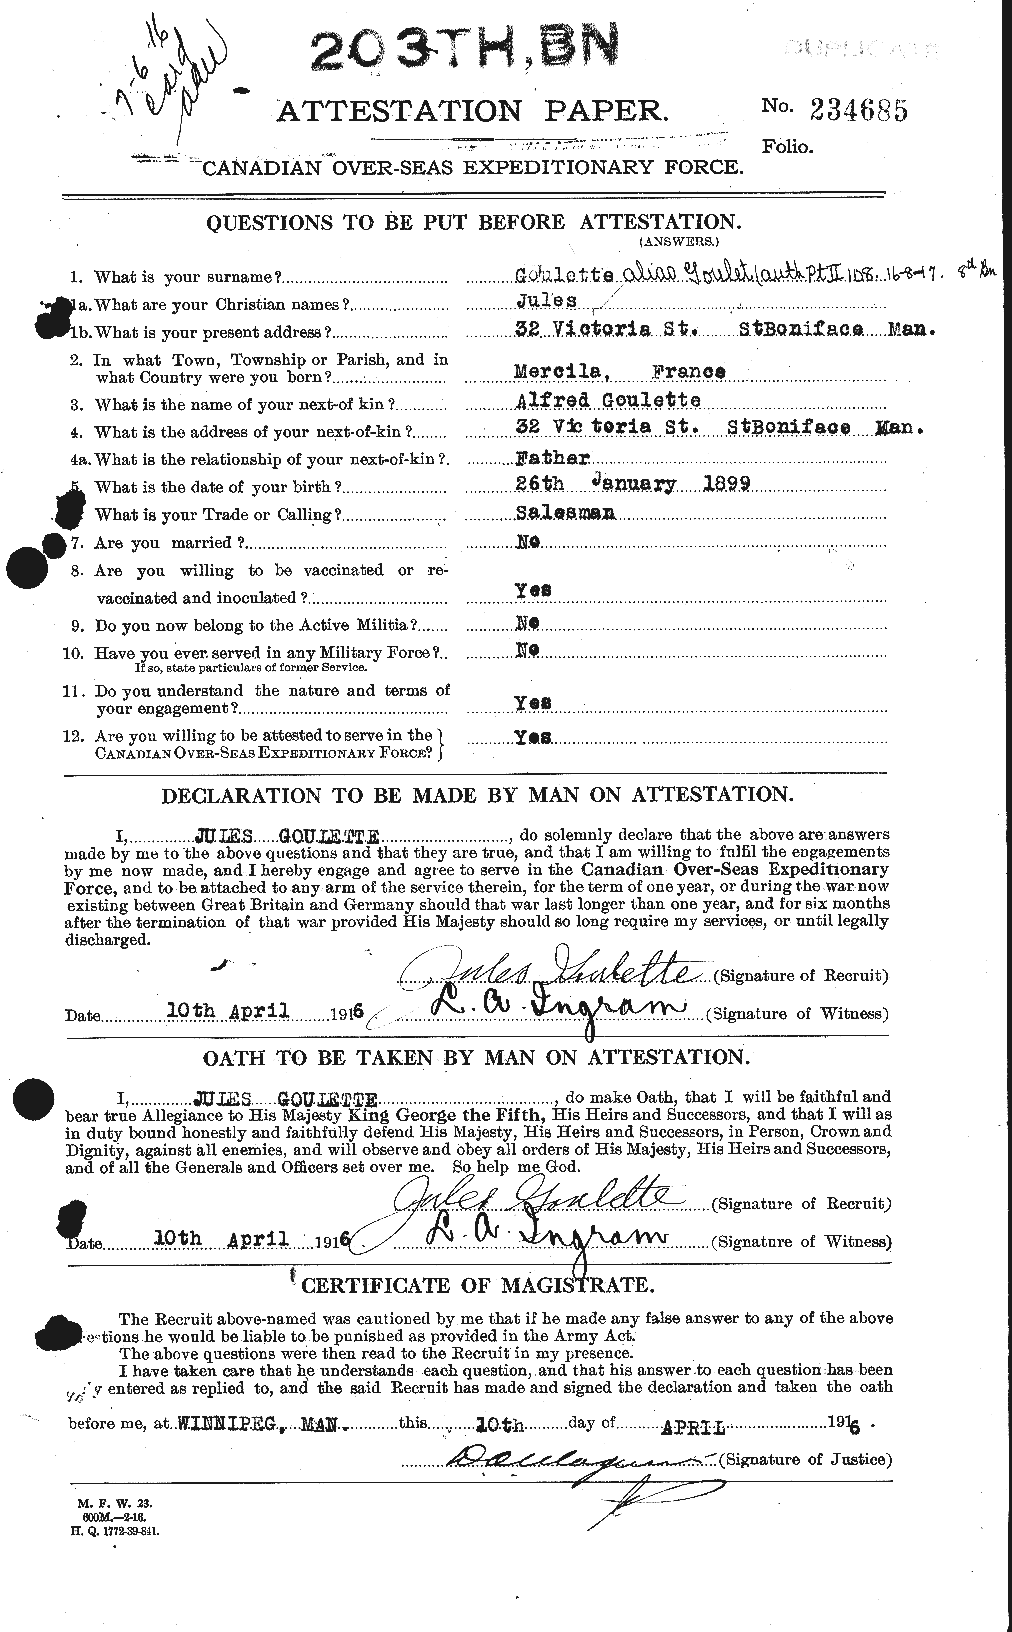 Dossiers du Personnel de la Première Guerre mondiale - CEC 360643a